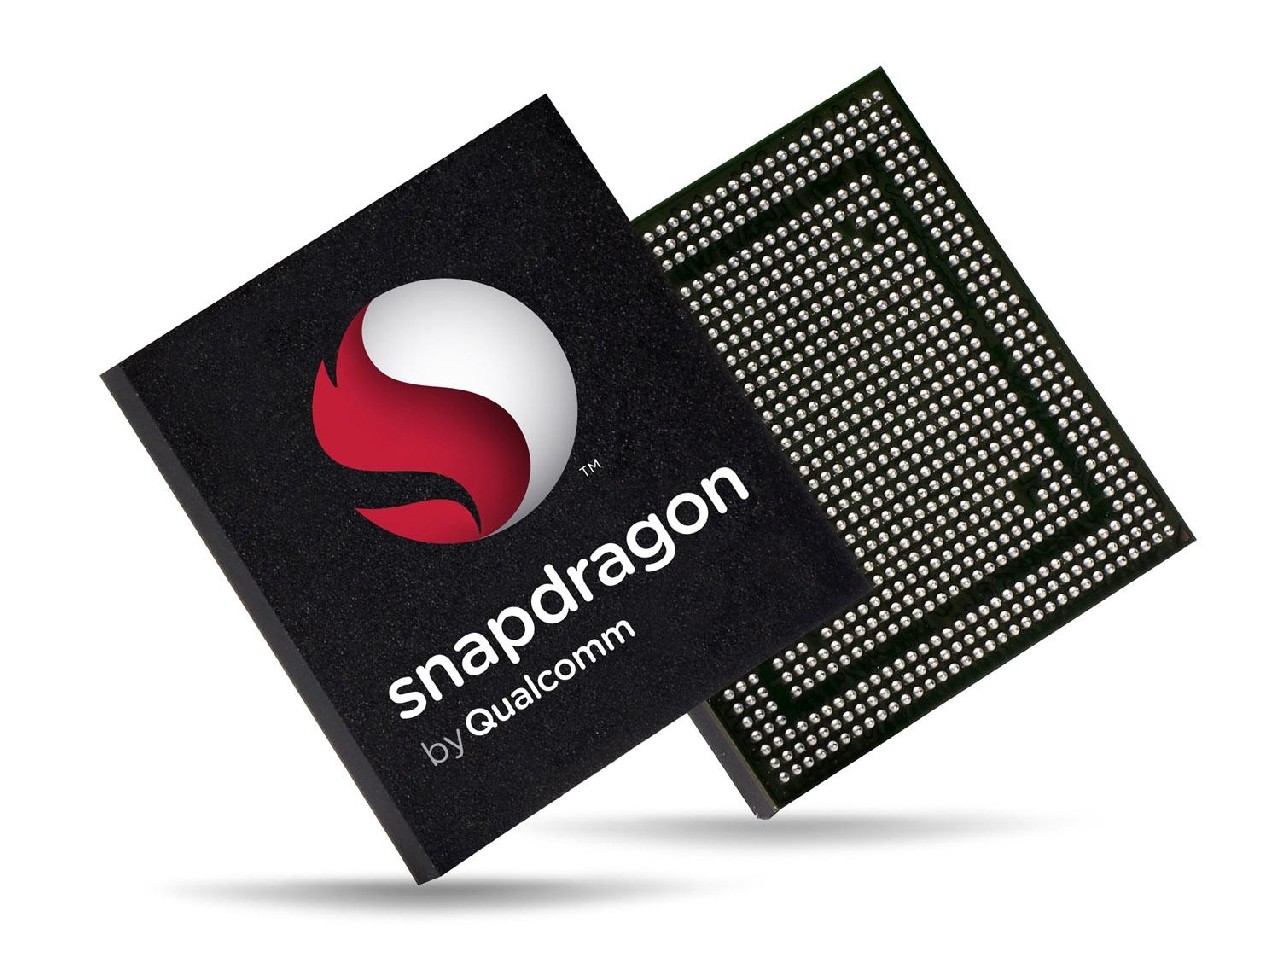 Androidowi programiści wykorzystają pełen potencjał procesorów Snapdragon